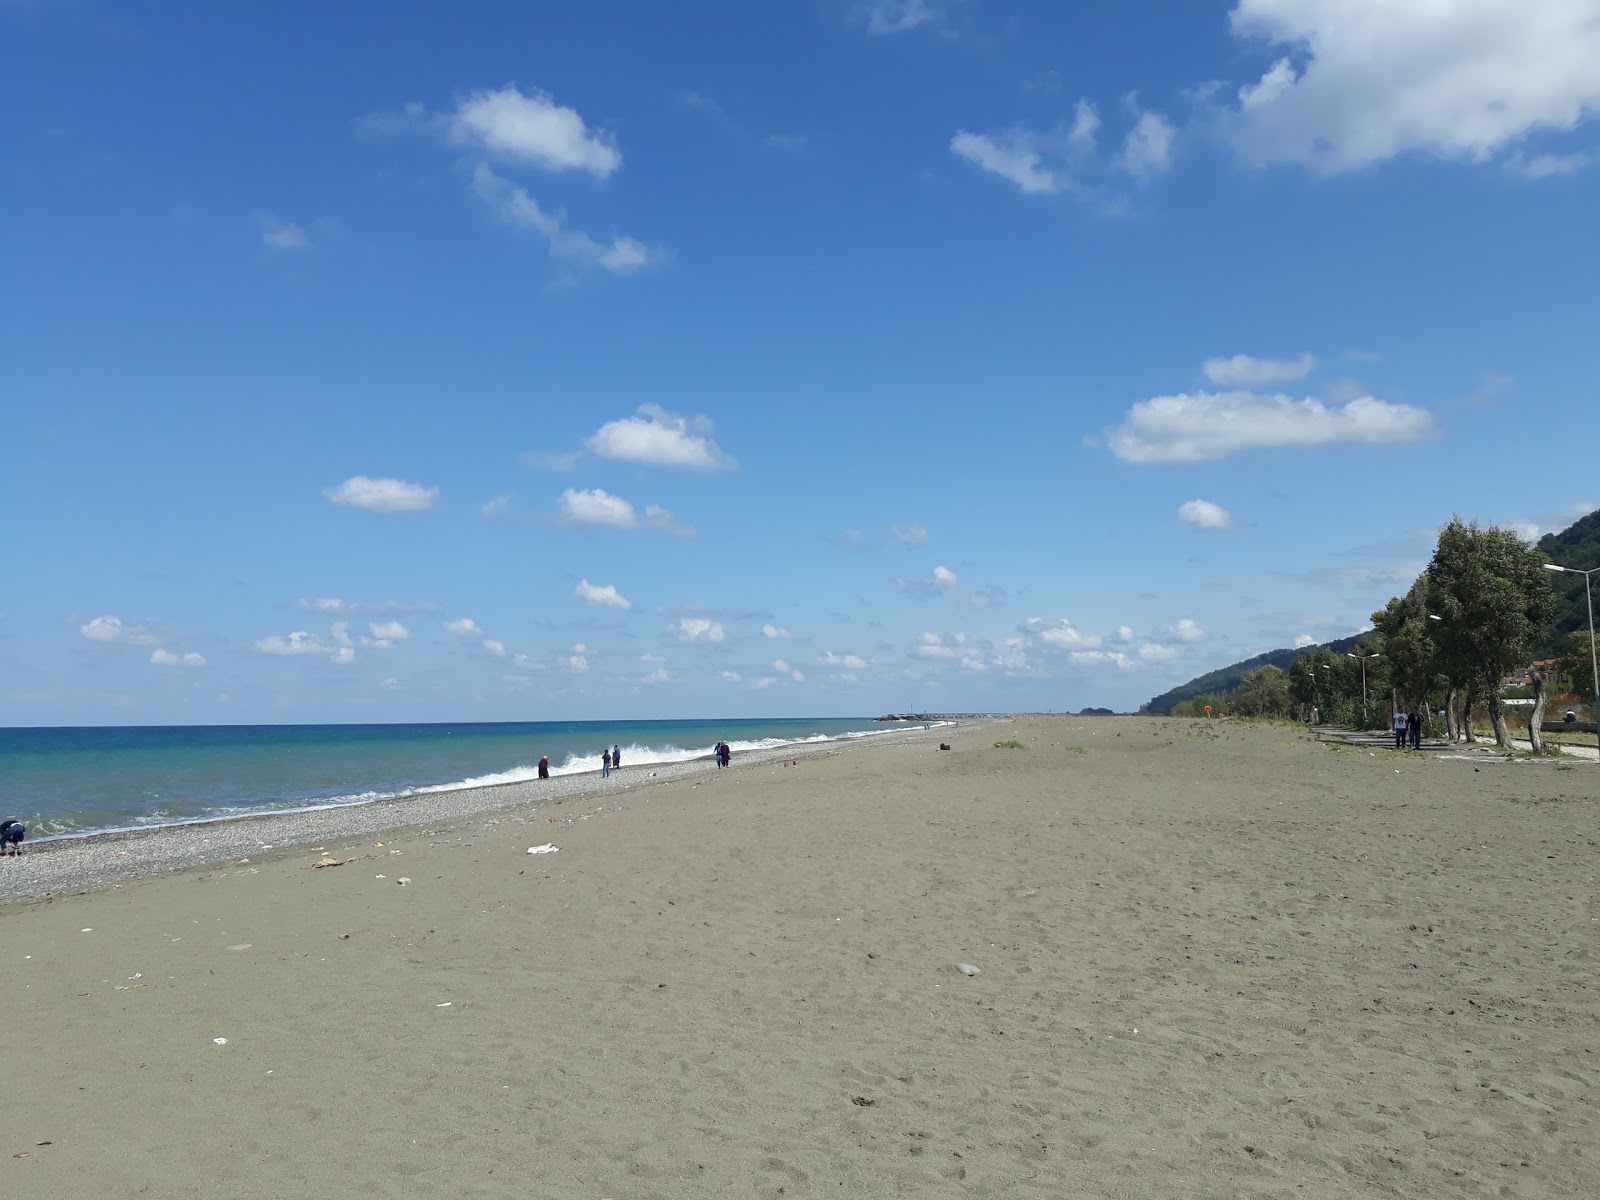 Fotografie cu Cocuk Bahces Beach - locul popular printre cunoscătorii de relaxare